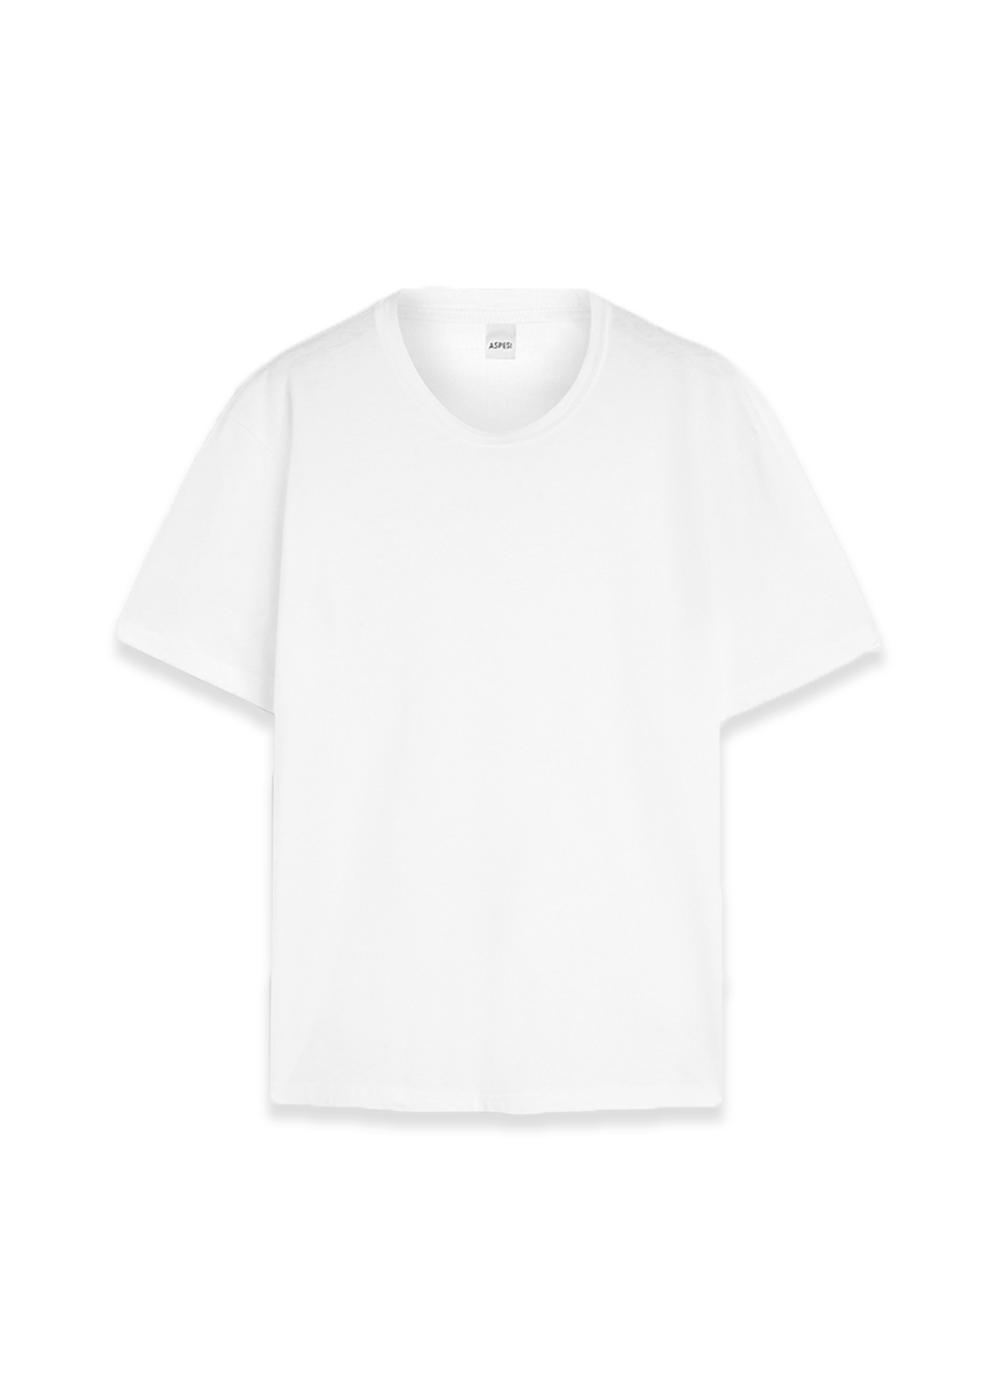 Aspesis T-Shirt Mod. 3107 - White. Køb t-shirts her.